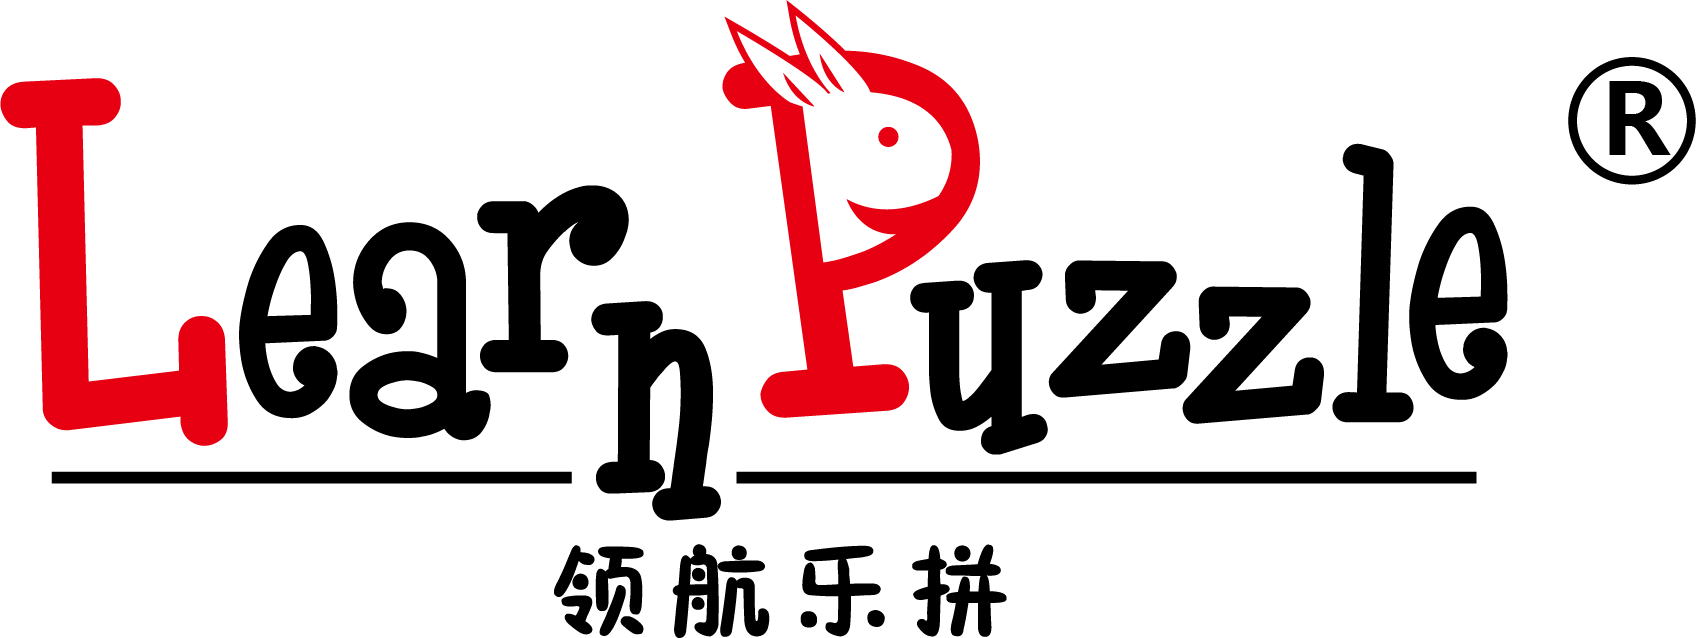 乐拼 logo.png